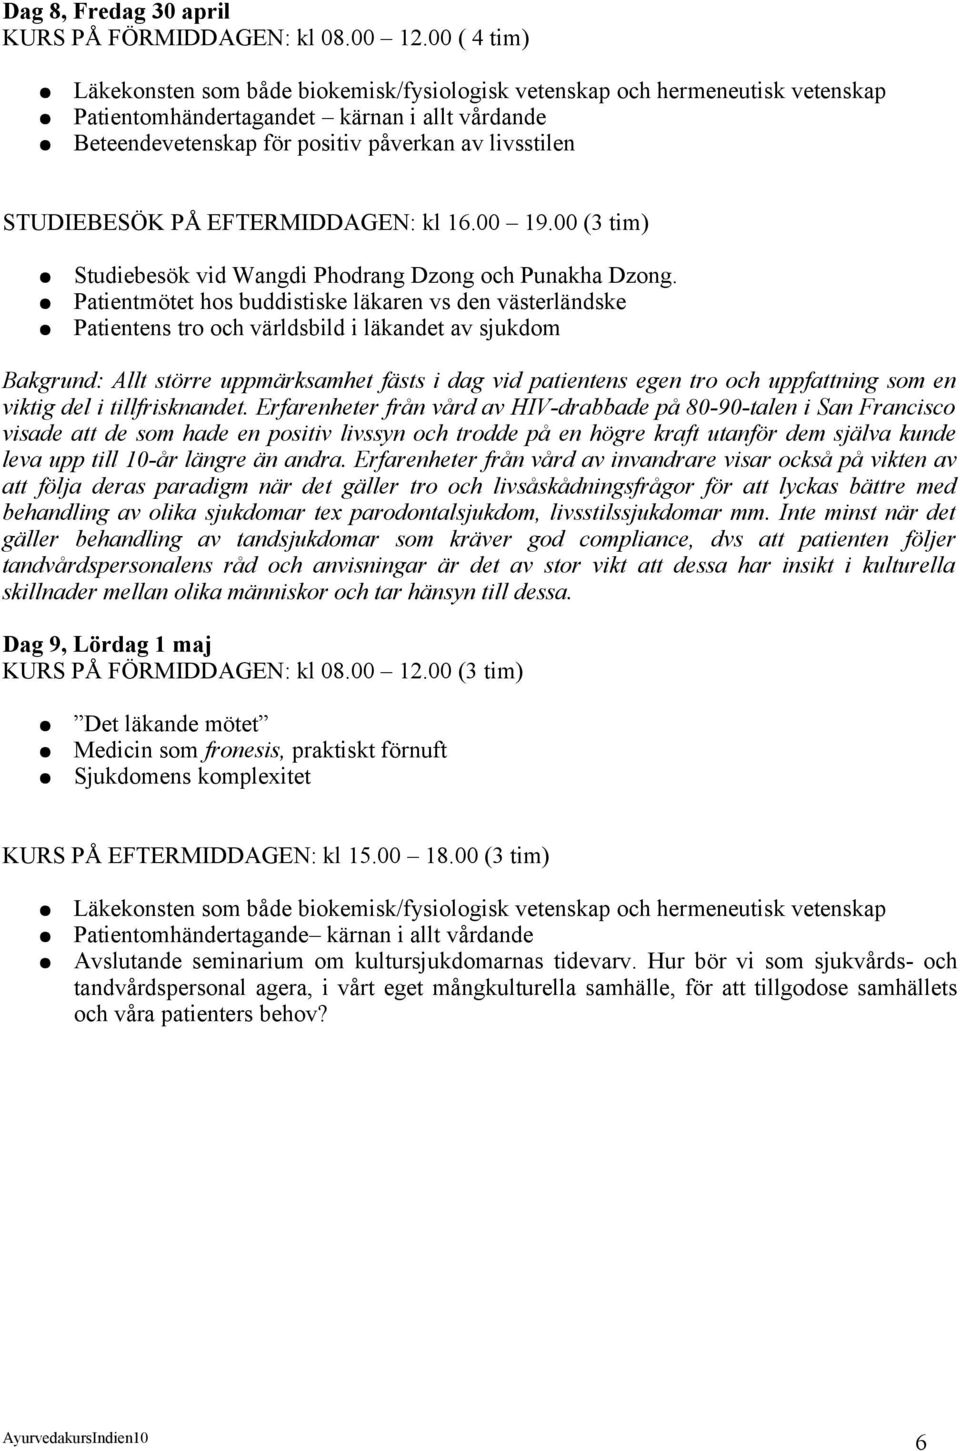 STUDIEBESÖK PÅ EFTERMIDDAGEN: kl 16.00 19.00 (3 tim) Studiebesök vid Wangdi Phodrang Dzong och Punakha Dzong.